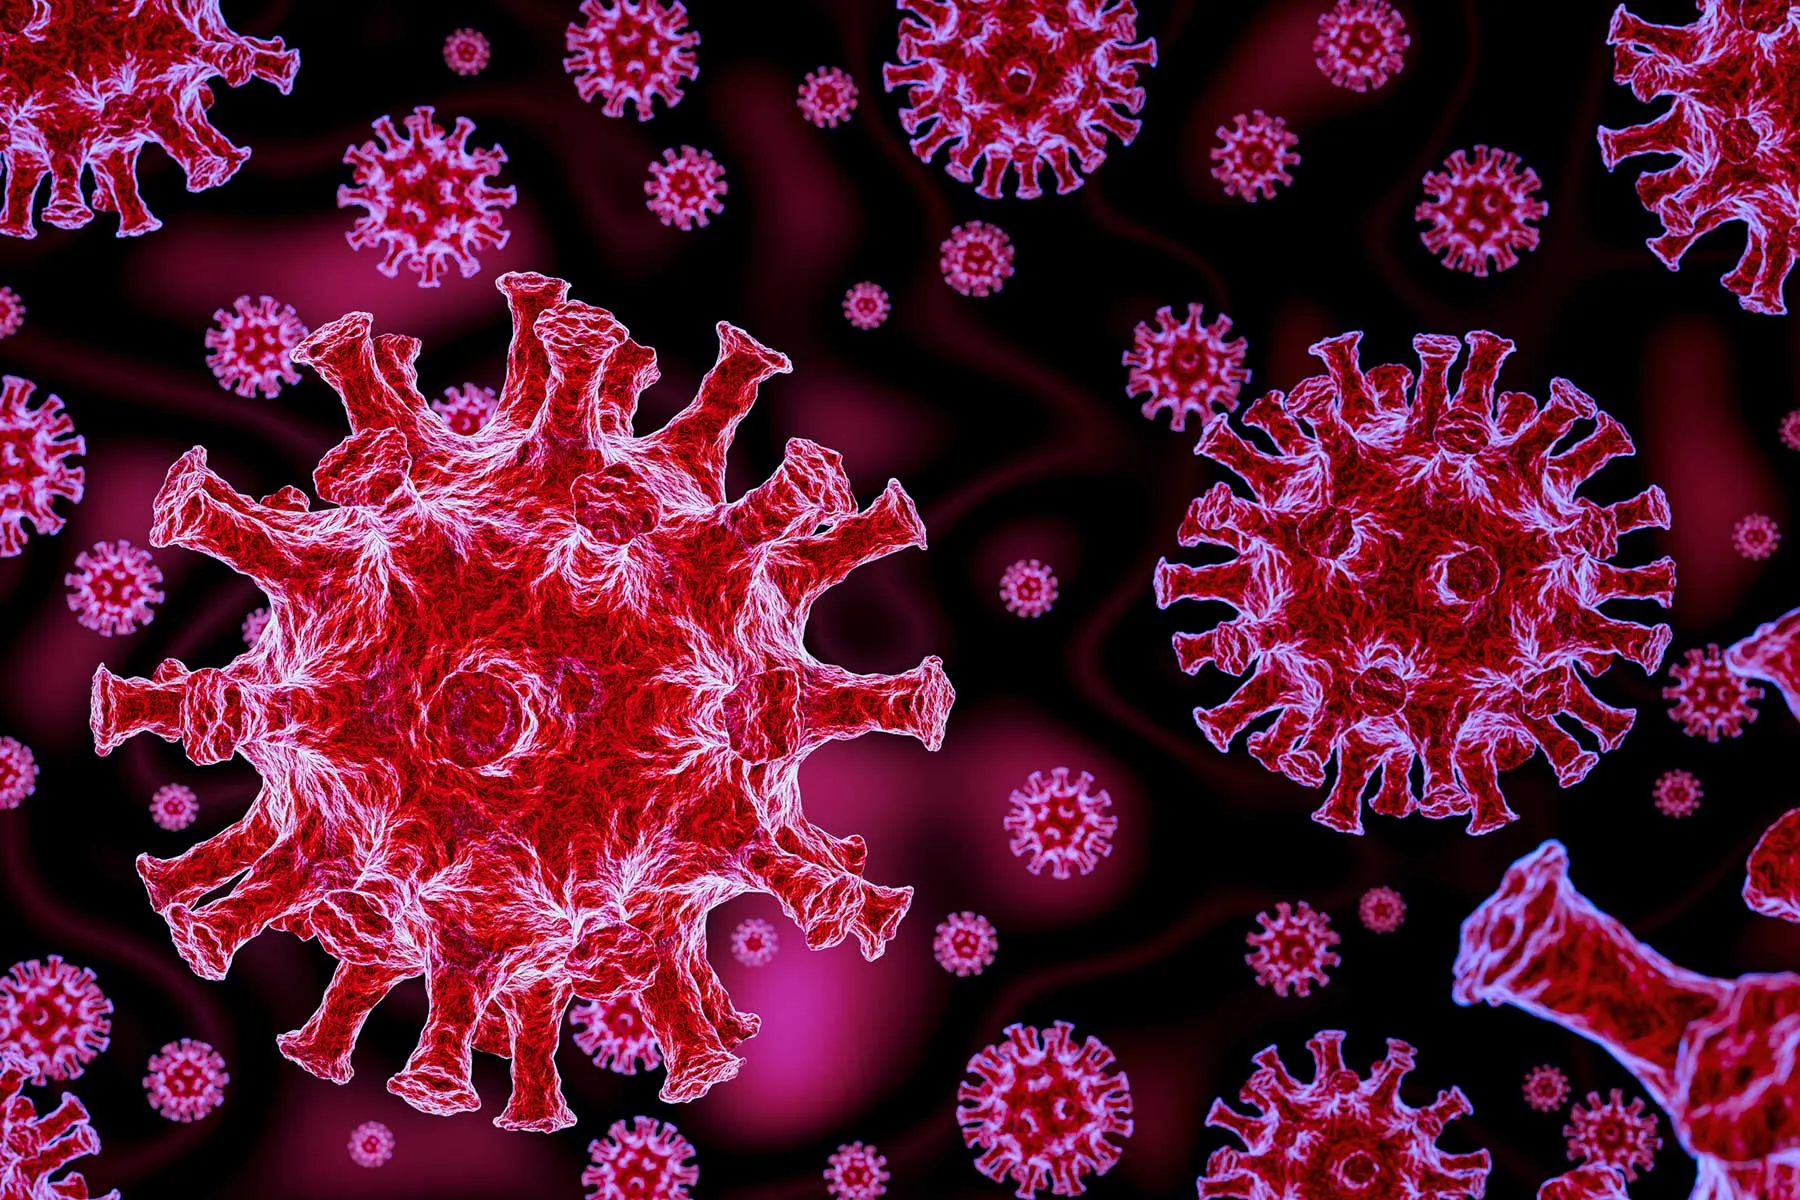 Cercetătorii au creat un virus care atacă cancerul, dar nu afectează celulele sănătoase